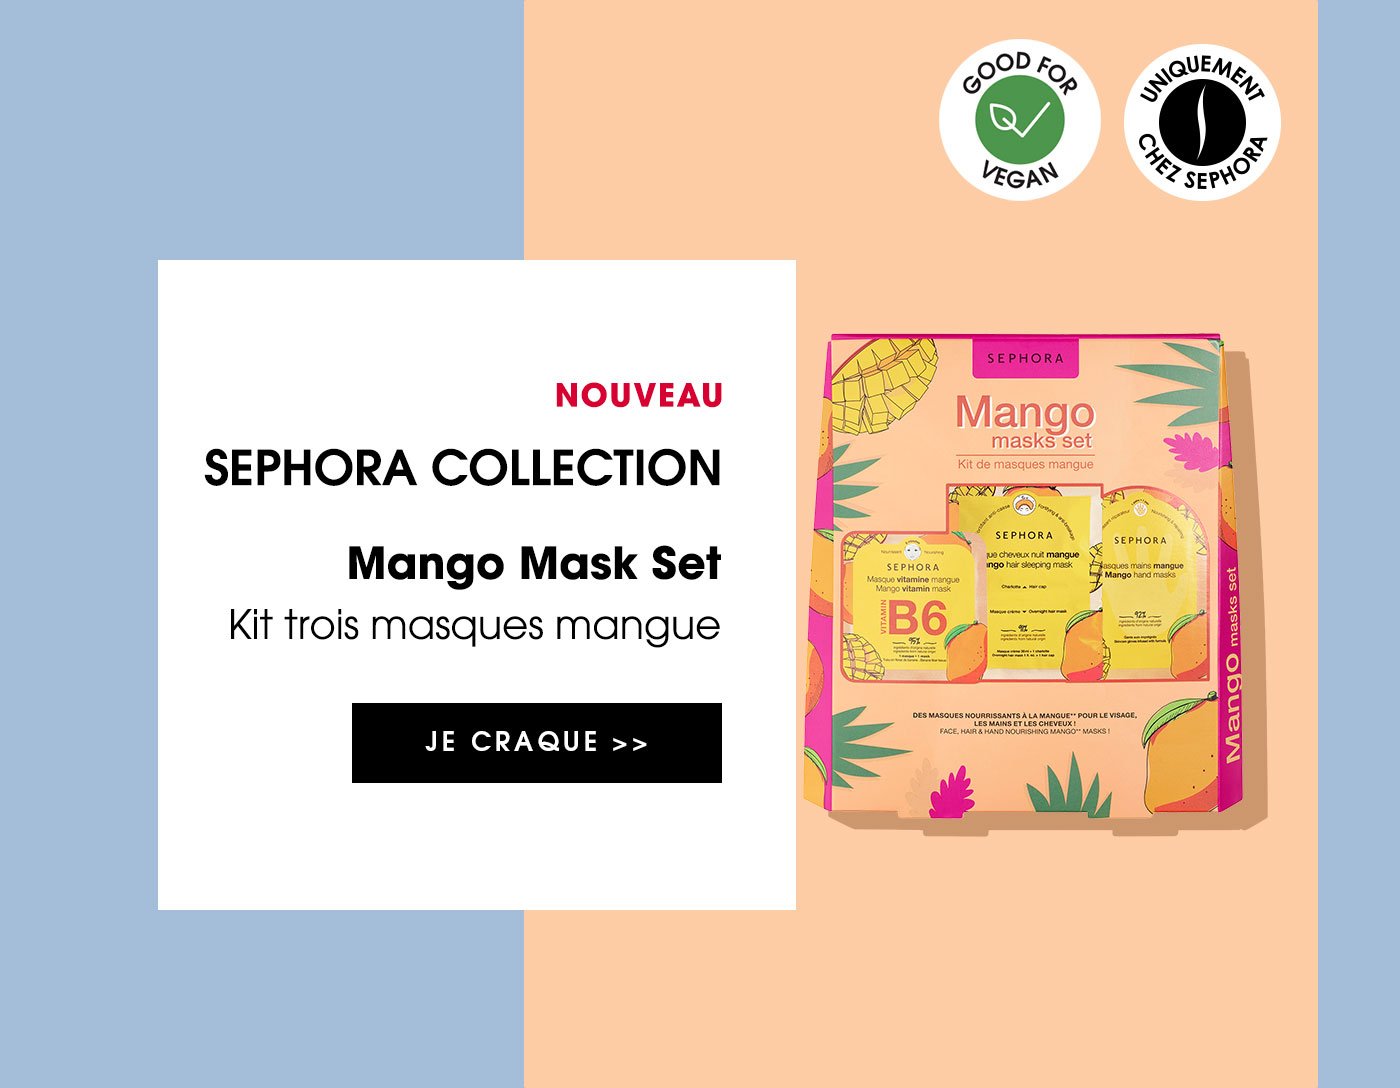 SEPHORA COLLECTION Mango Mask Set - Kit trois masques mangue | JE CRAQUE >>